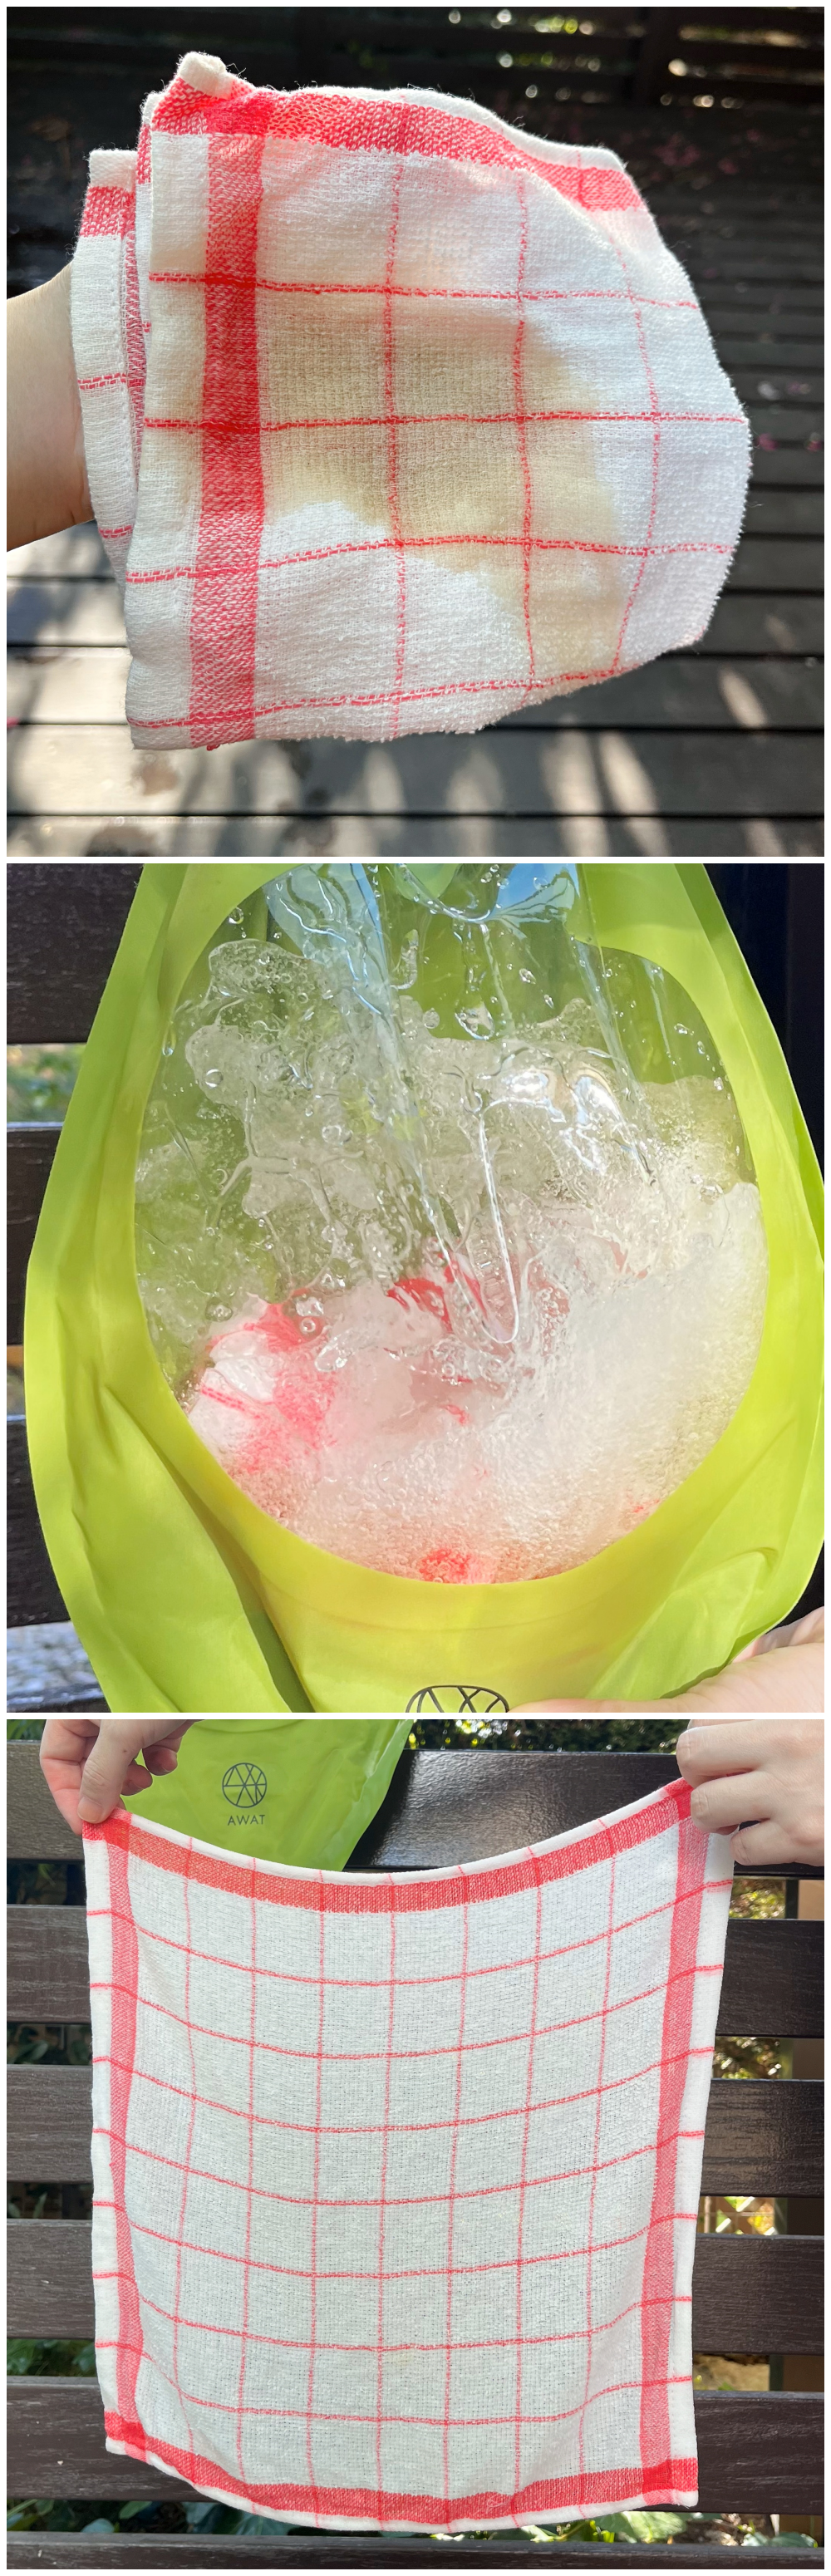 NITORI（ニトリ）で見つけたおすすめ洗濯アイテム「シャカシャカウォッシュバッグ3L AWAT」